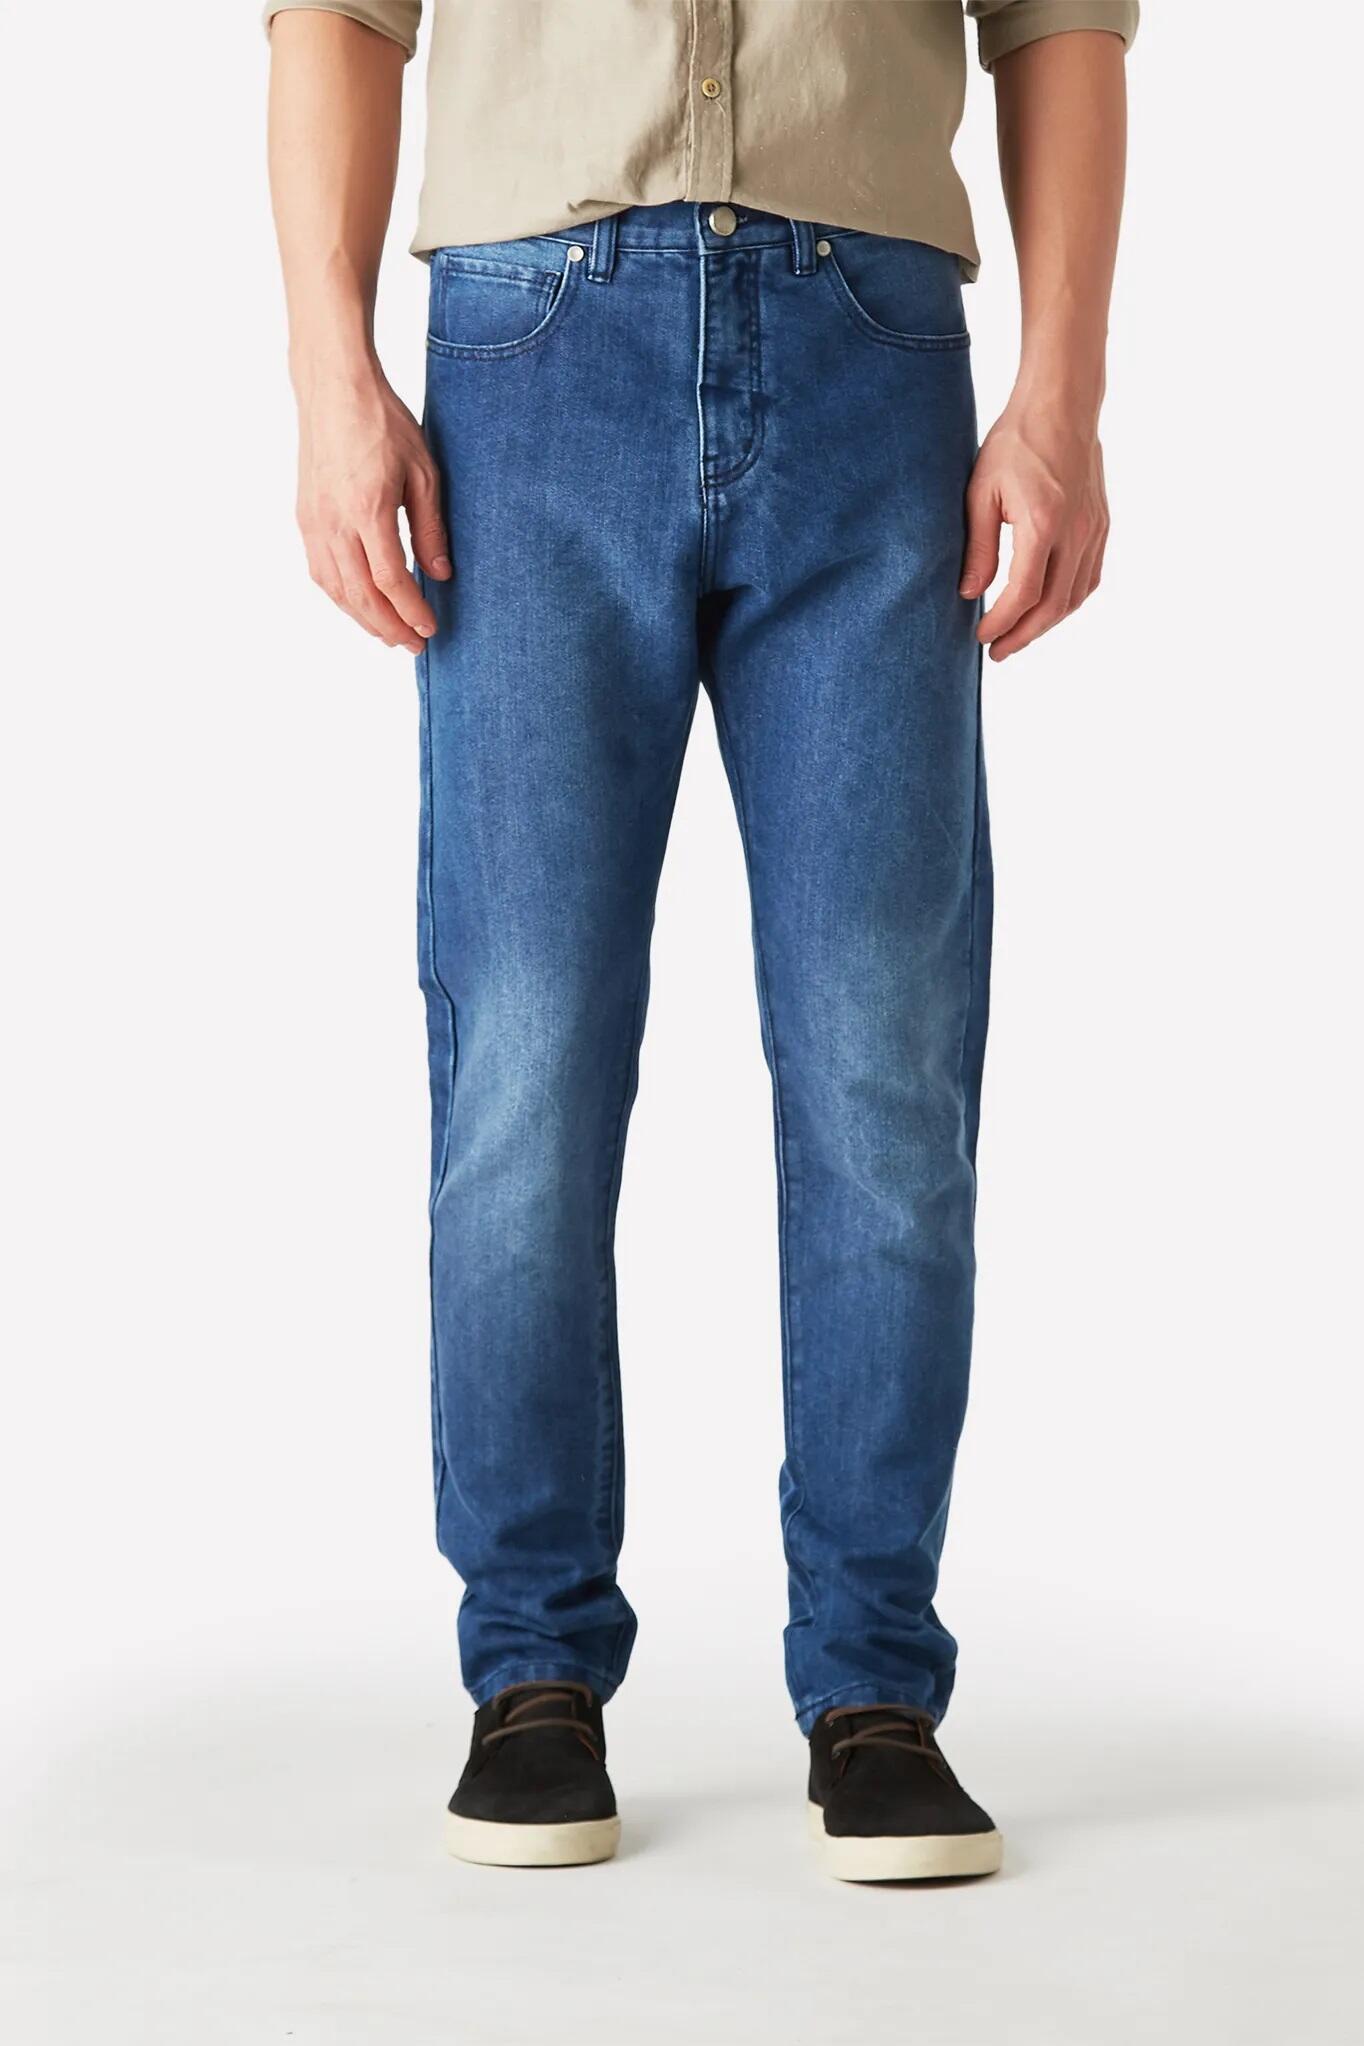 Onde comprar Jeans barato: as melhores lojas para comprar calça na internet!